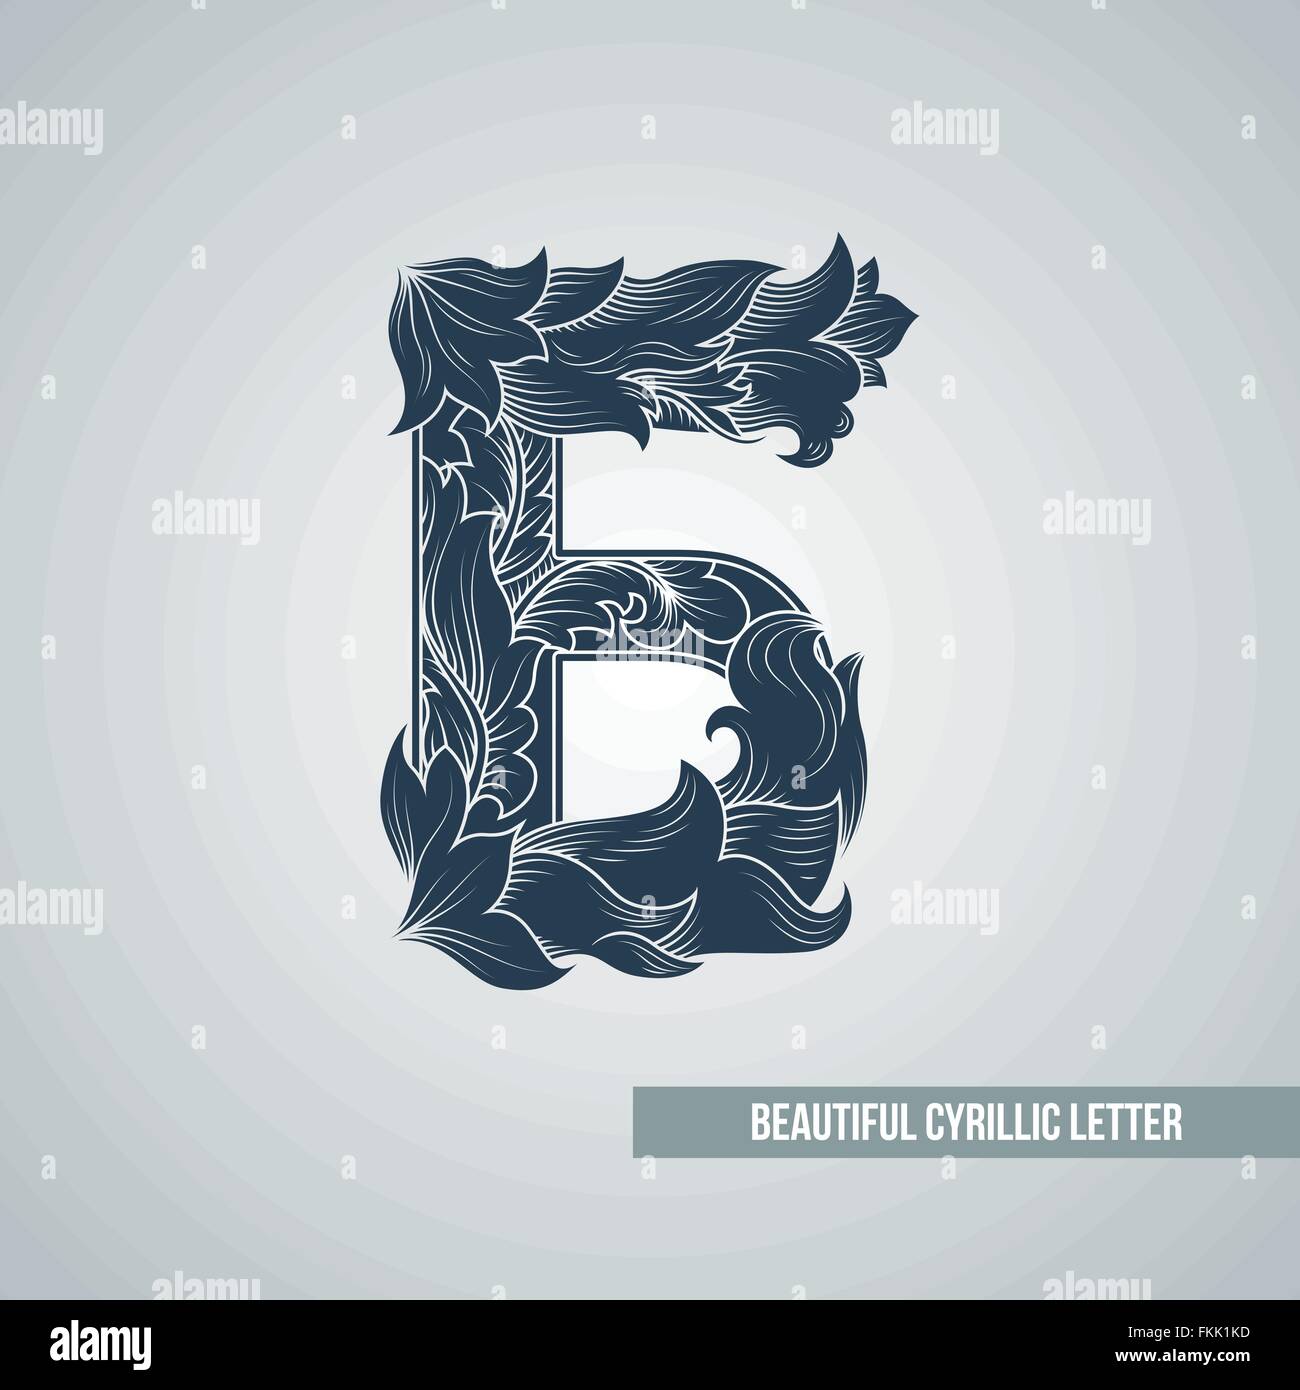 Б кириллица. Стилизованная буква б. Стилизация буквы б. Стилизованная буква а для логотипа. Стилизованные буквы для лого.